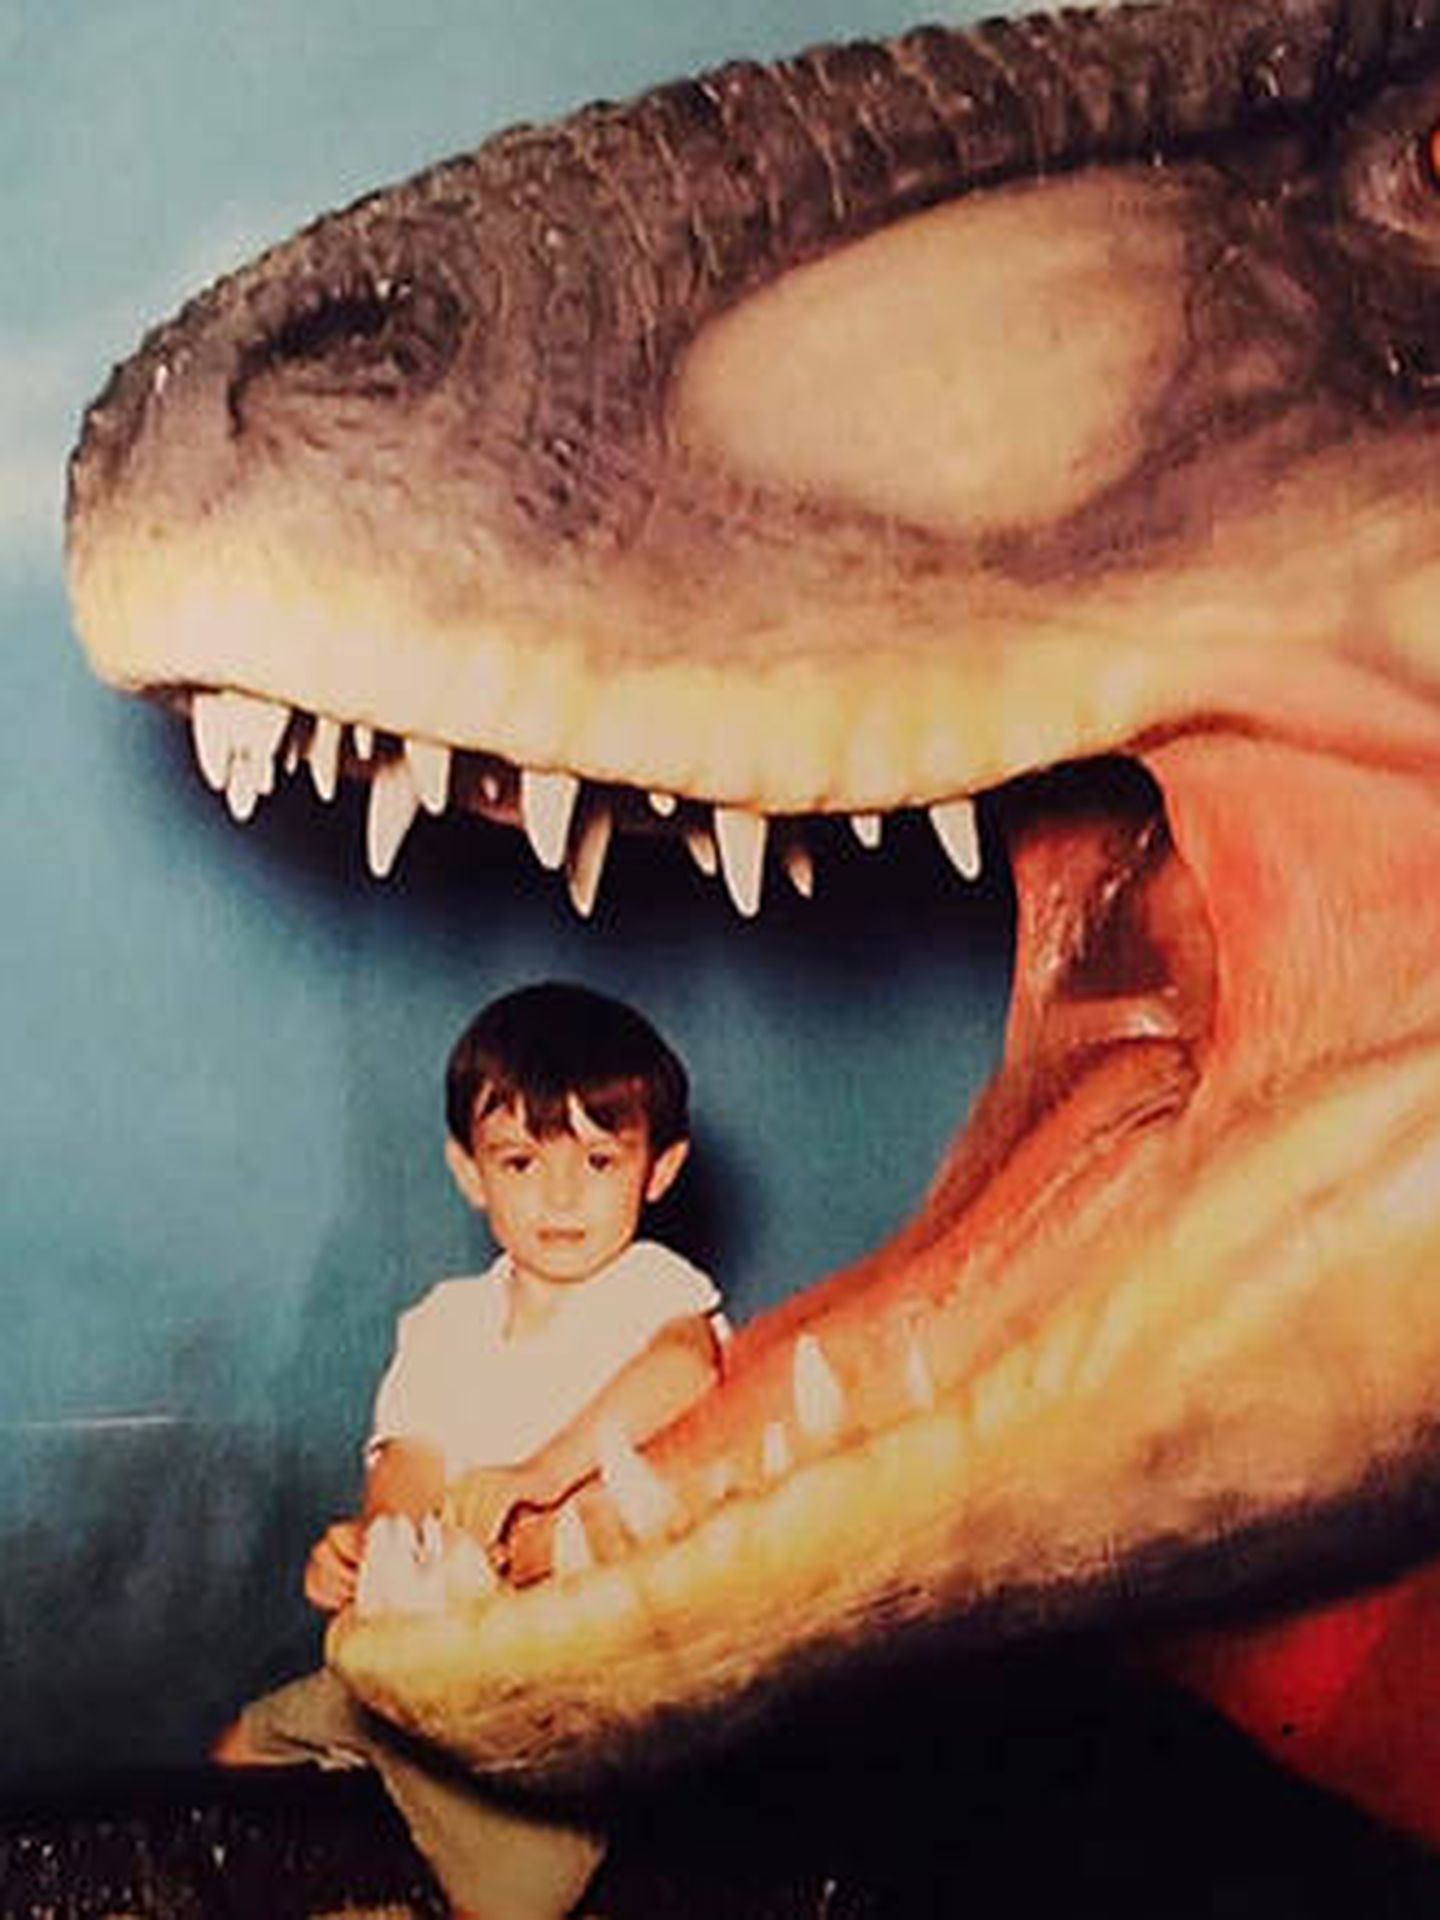 La pasión de Harrison por los dinosaurios le viene desde pequeño (Foto: Universidad de California Merced)